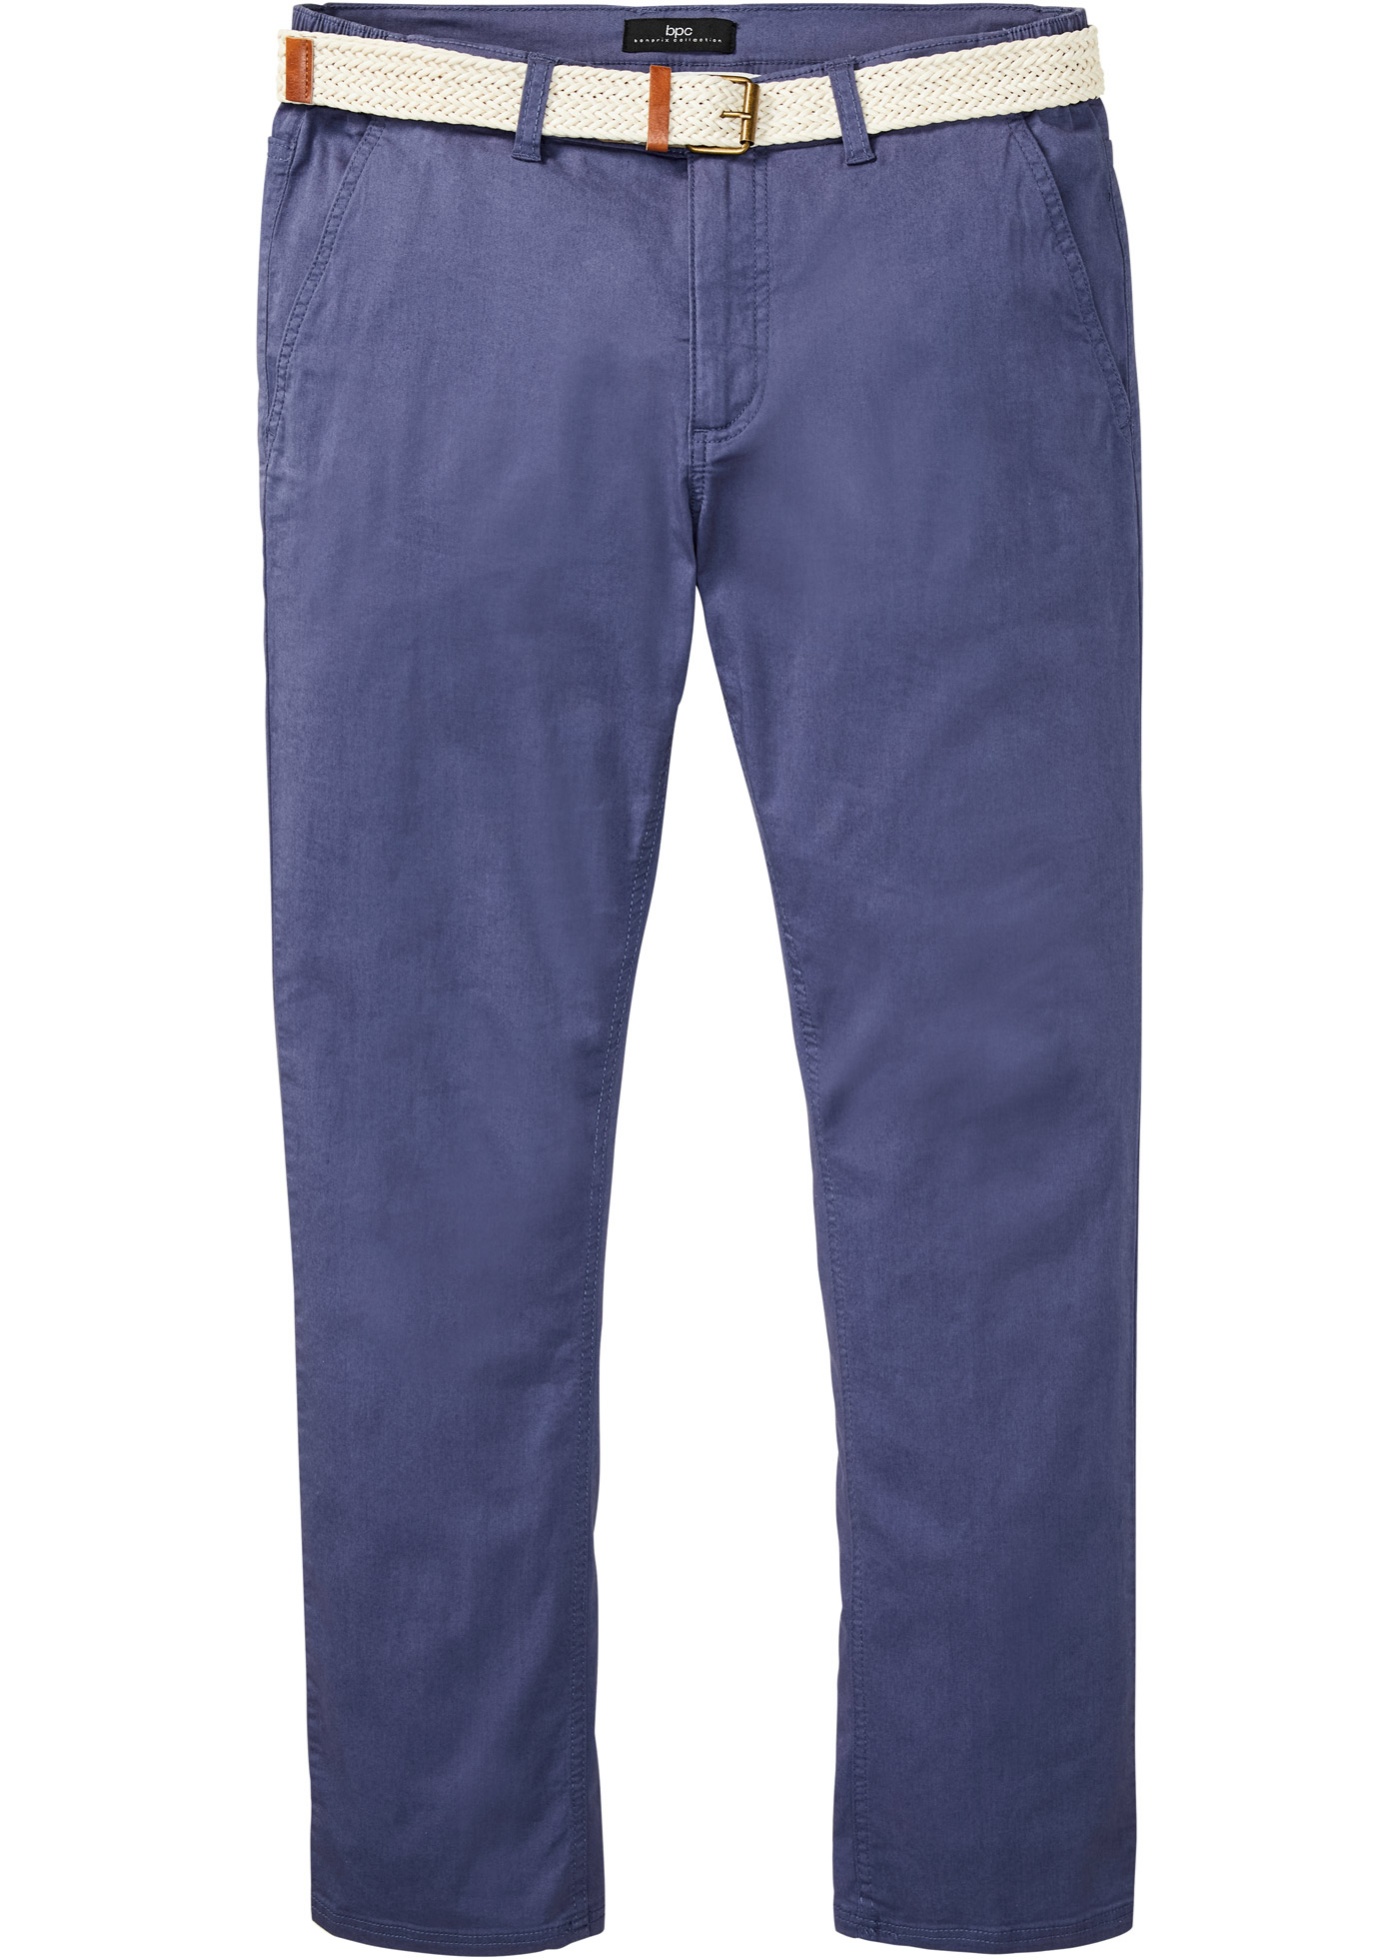 Chino strečové nohavice s komfortným strihom a opaskom, rovné